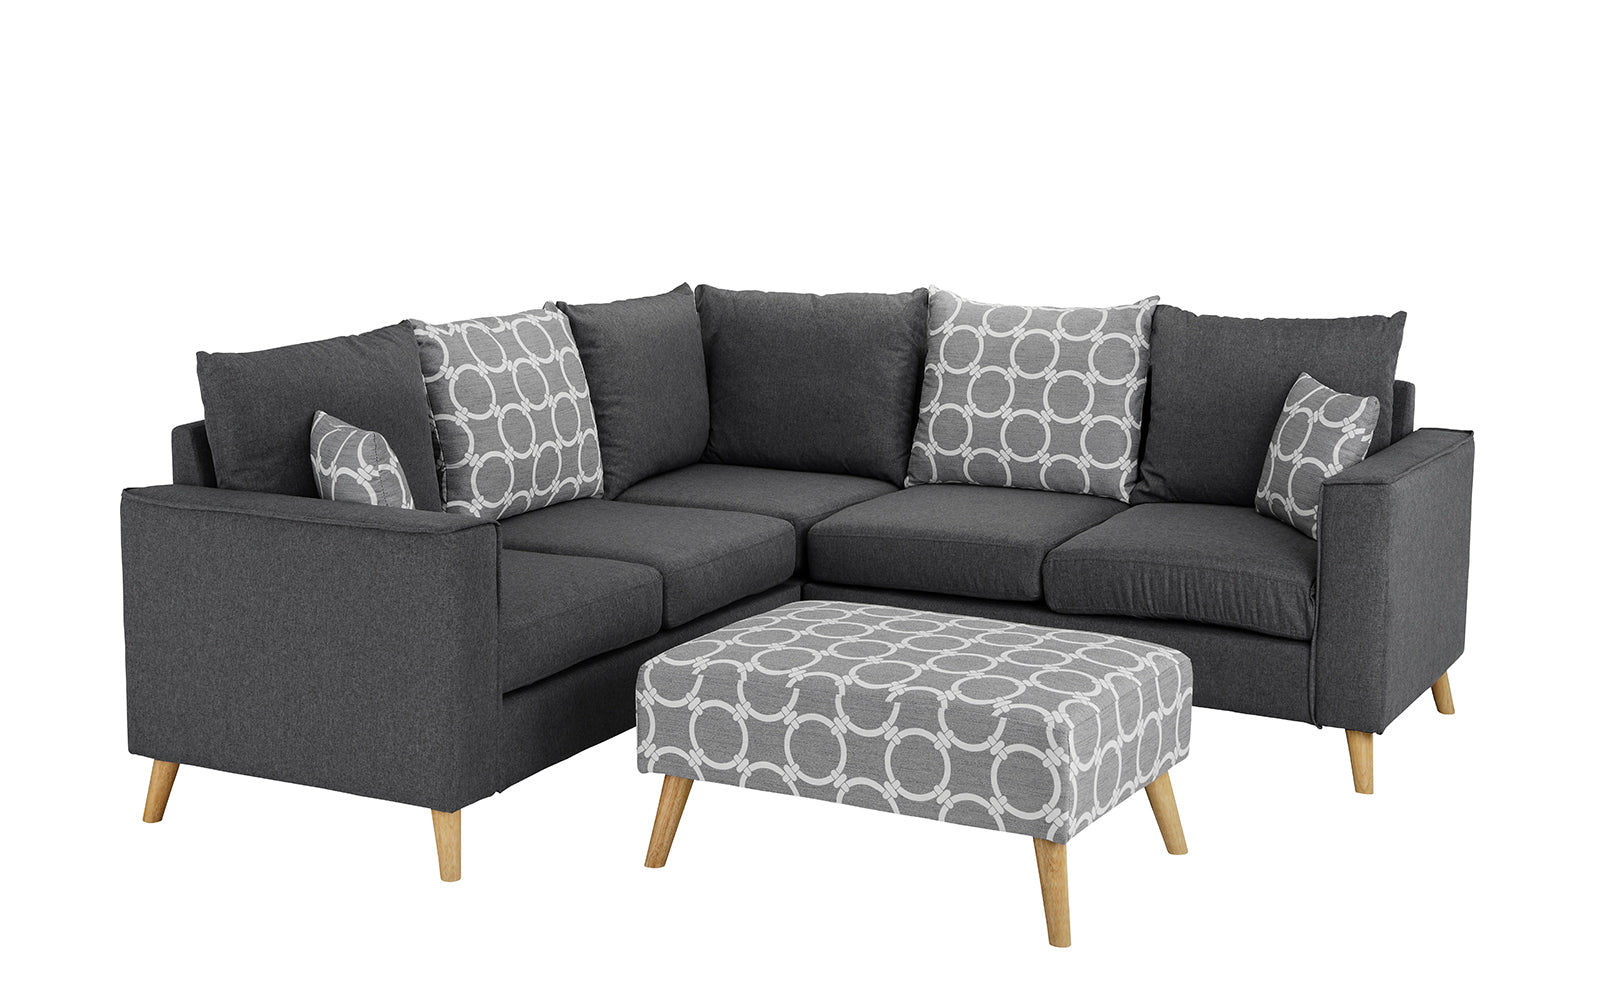 Karla Modern Fabric Sectional Sofa with Ottoman